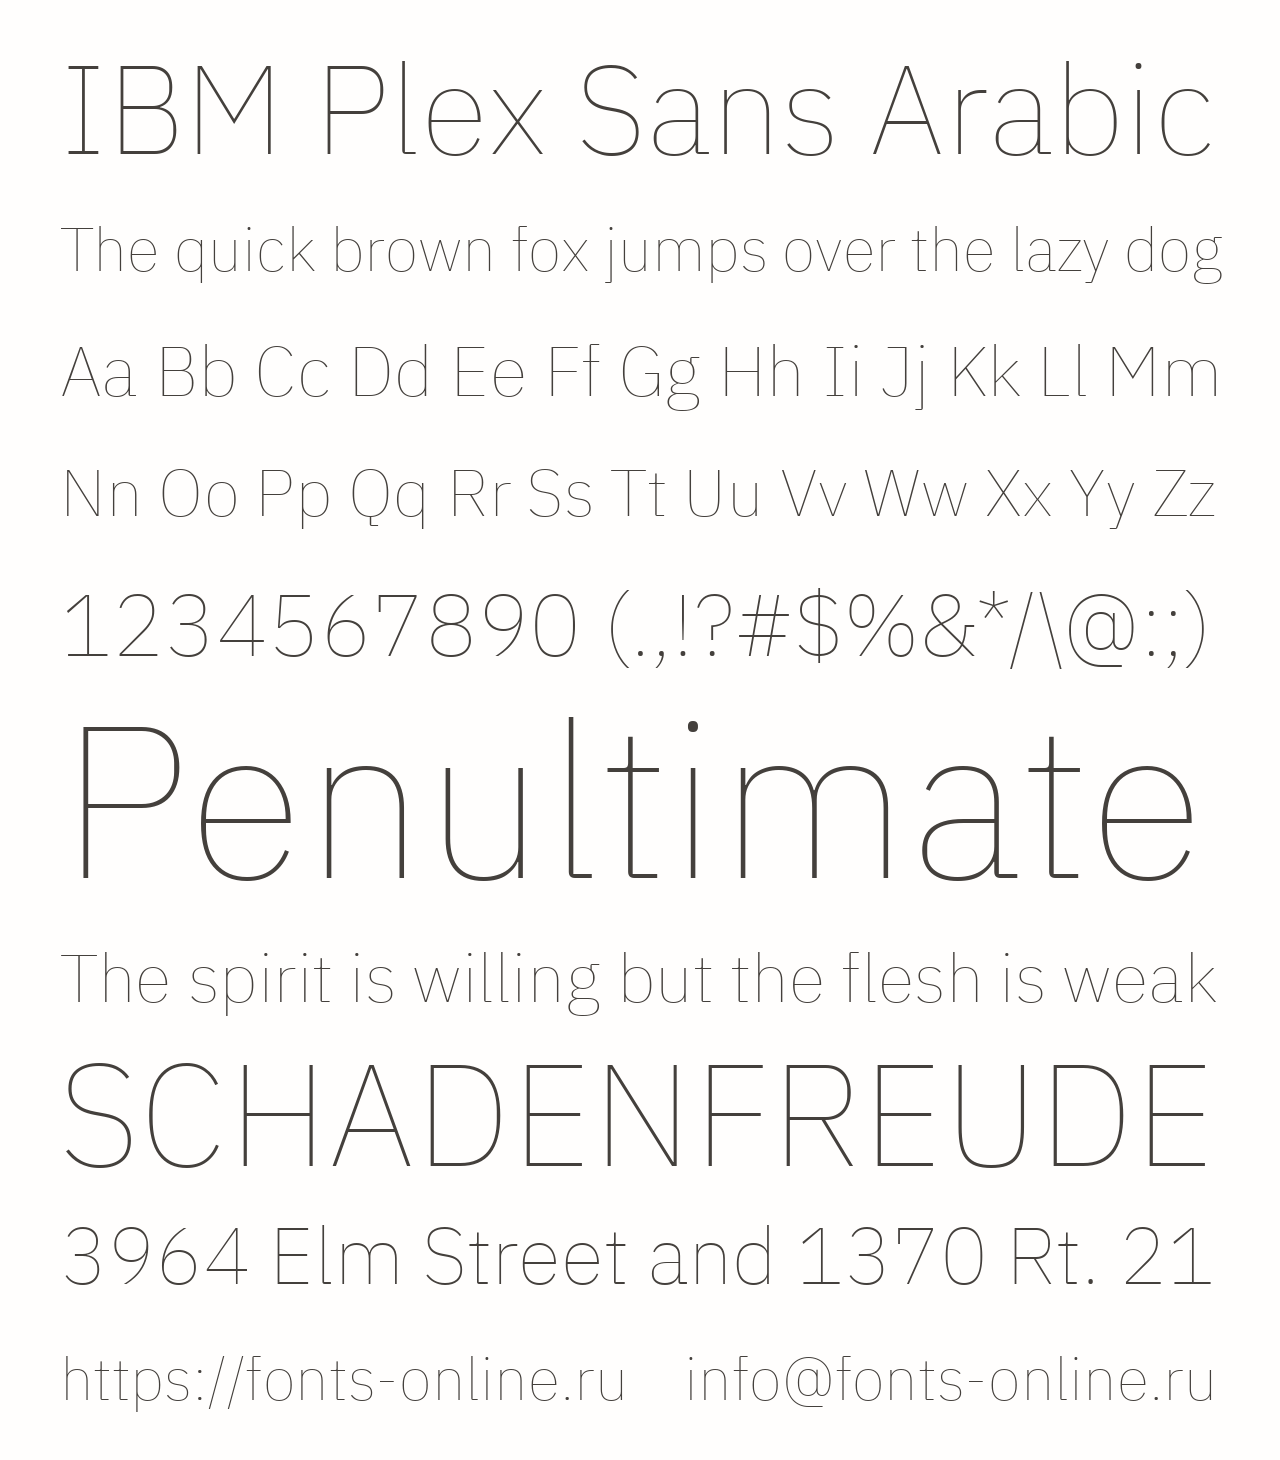 Шрифт IBM Plex Sans Arabic